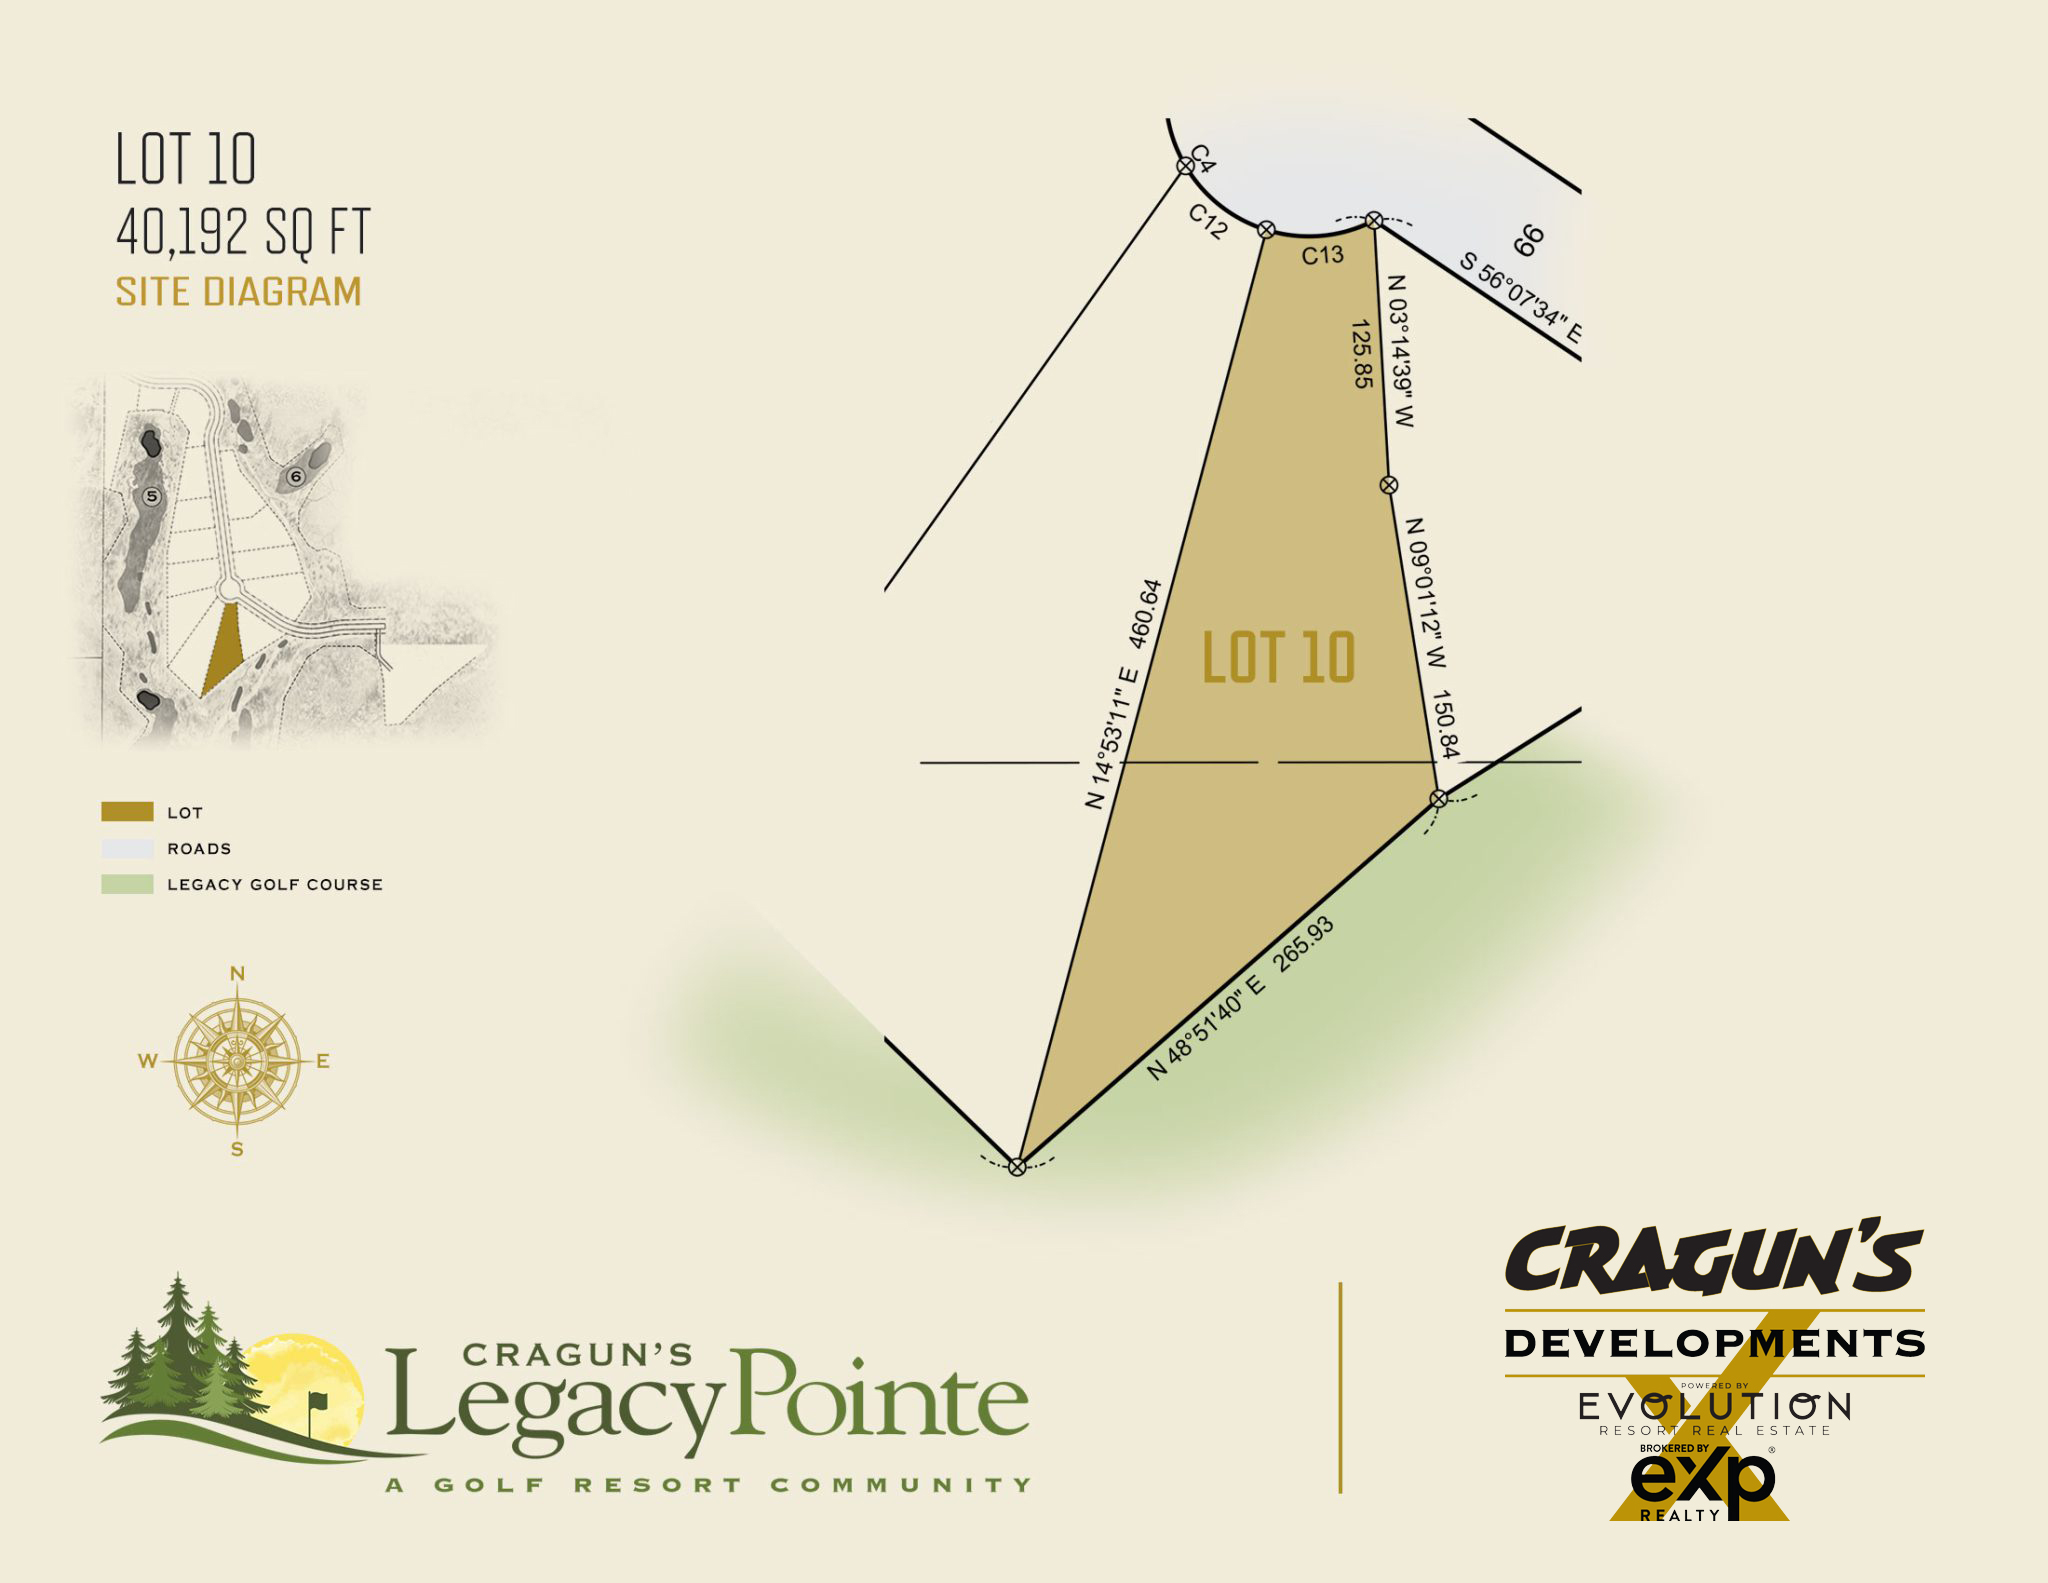 Legacy Pointe Lot 10 at Cragun's Developments in Brainerd, MN